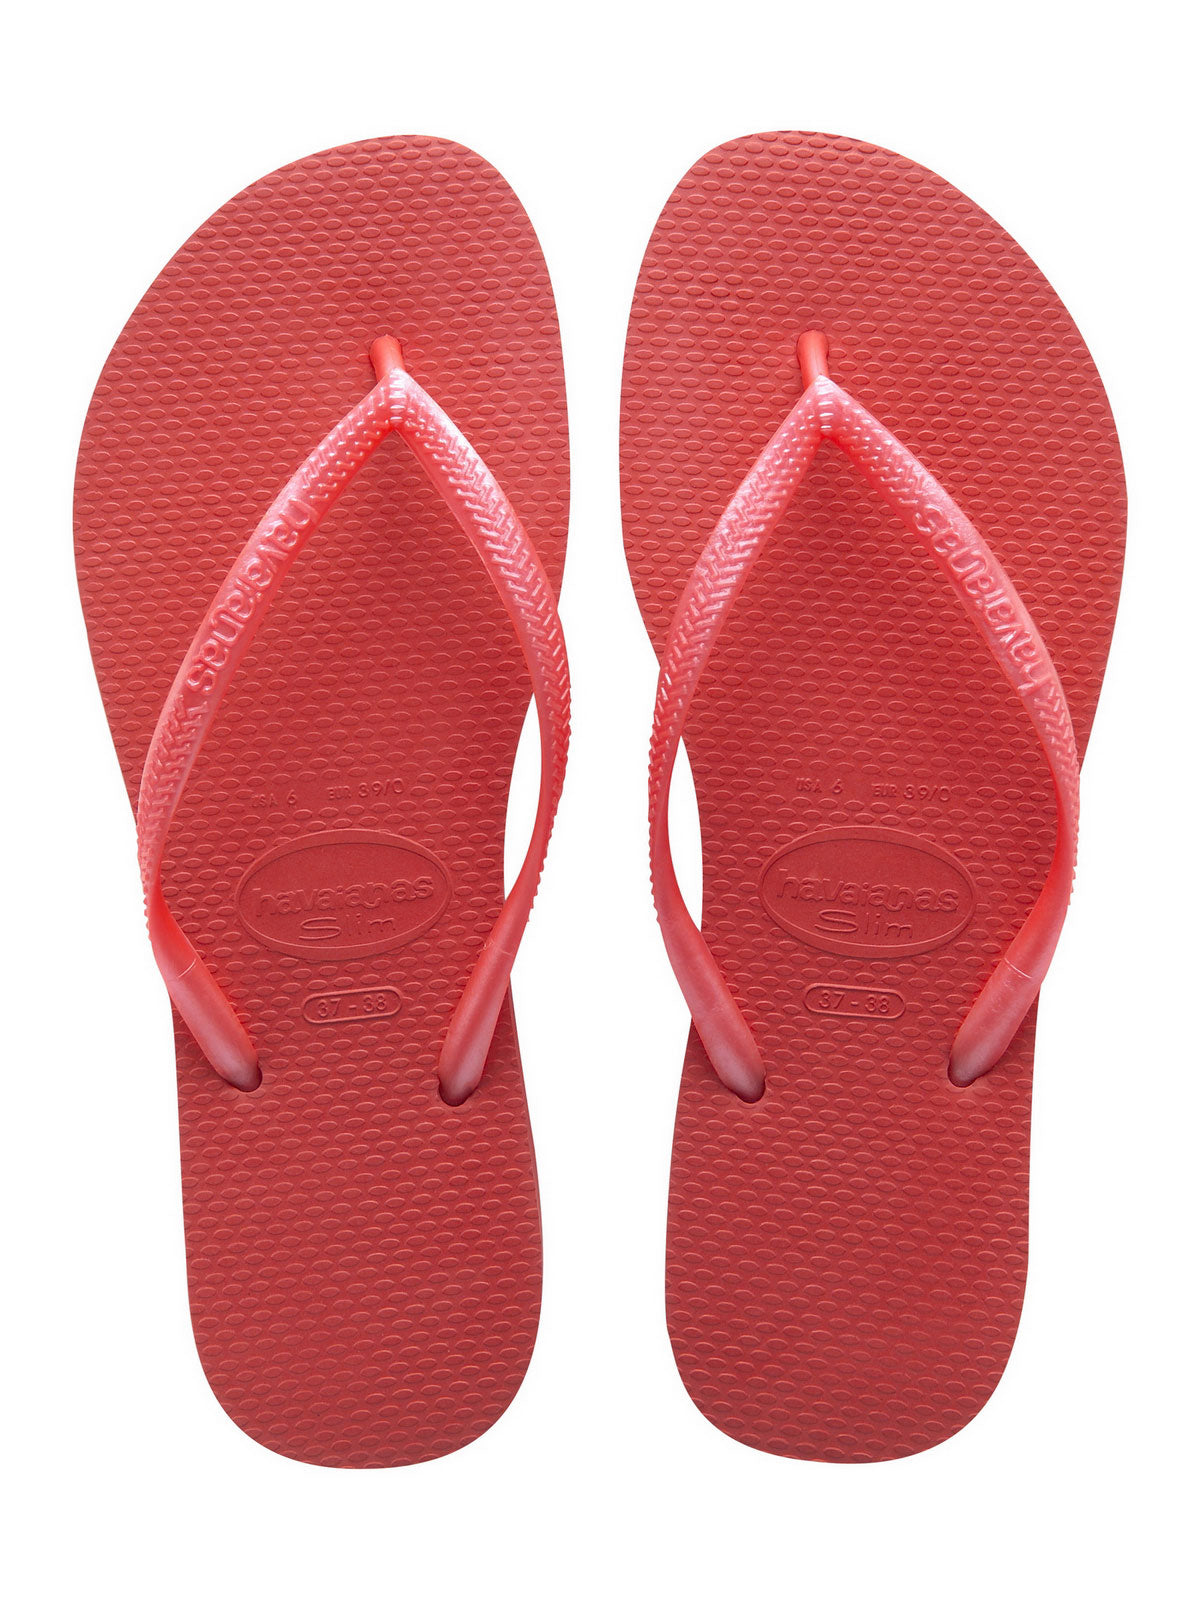 Havaianas Slim flip-flop papucs, piros - MYBRANDS.HU